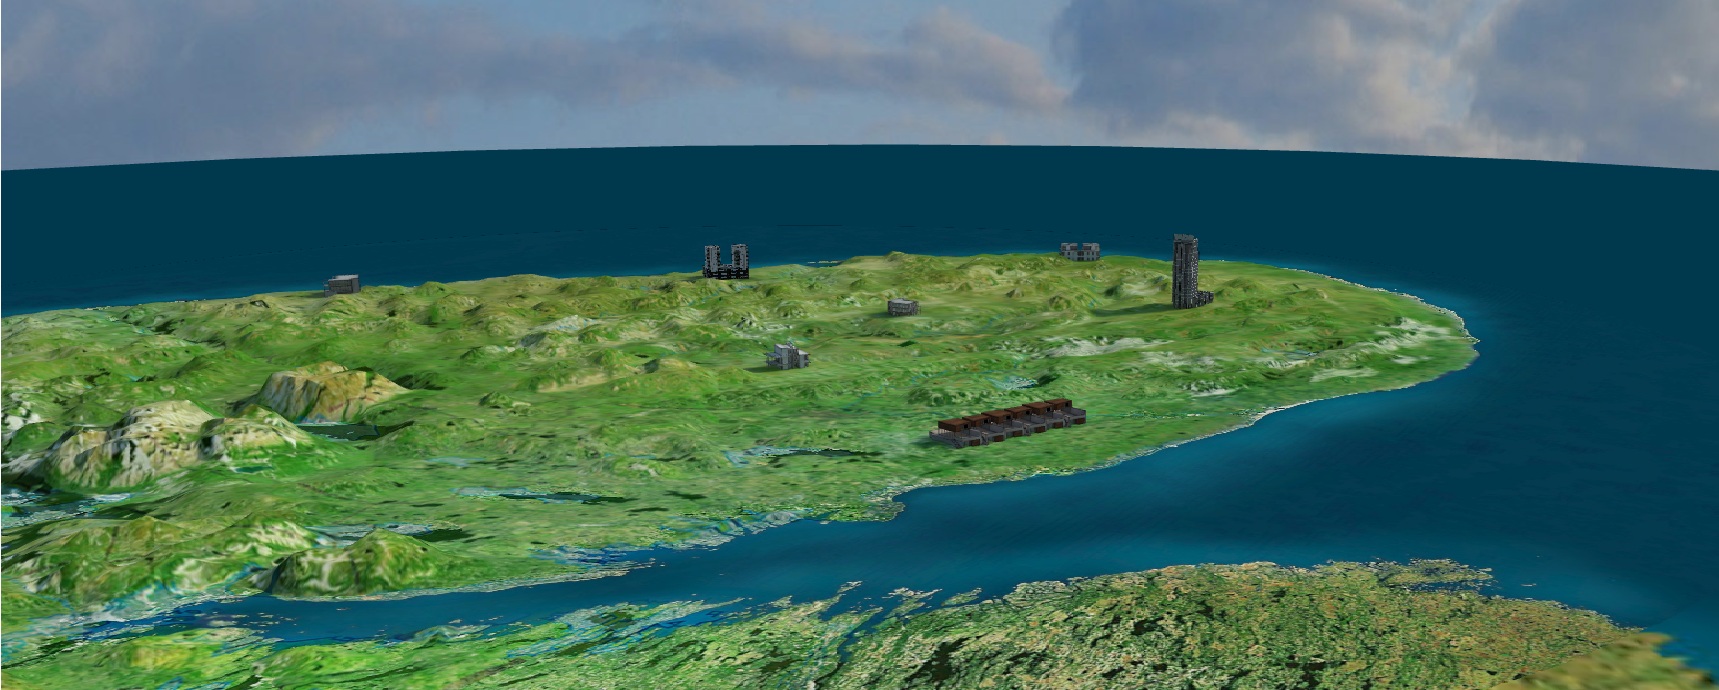 Интерактивная 3d модель полуострова